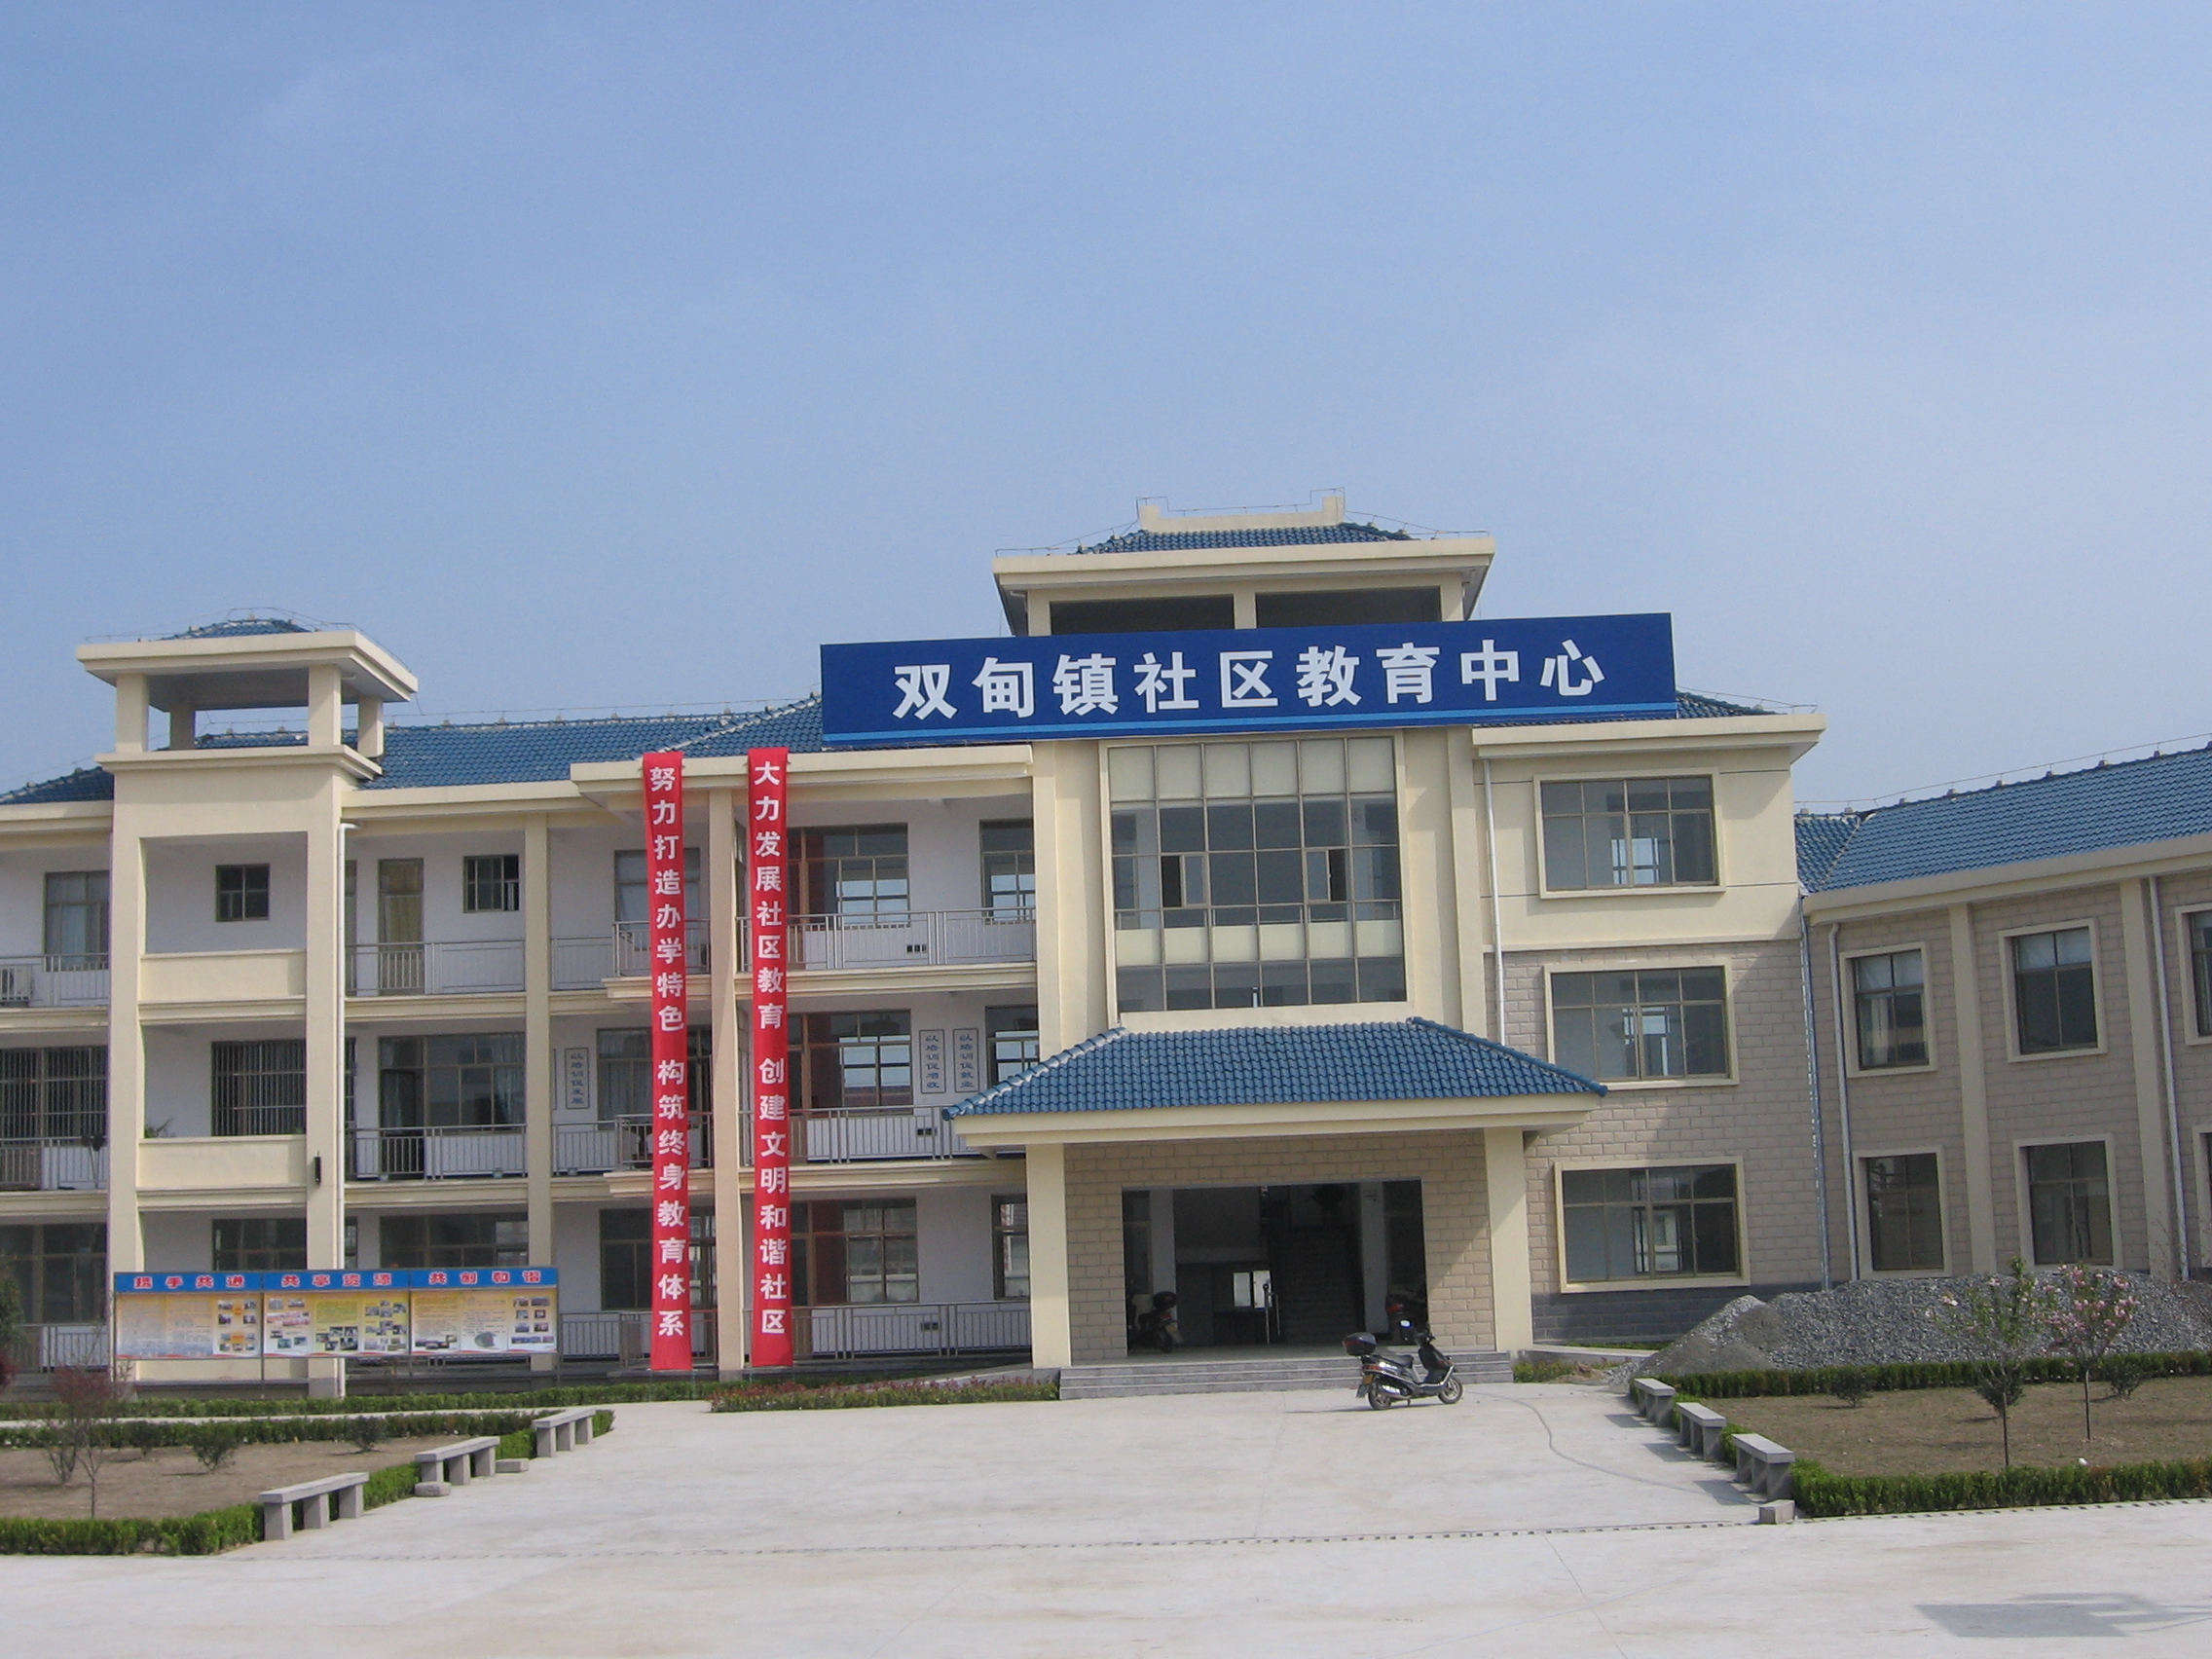 双甸镇社区教育中心 